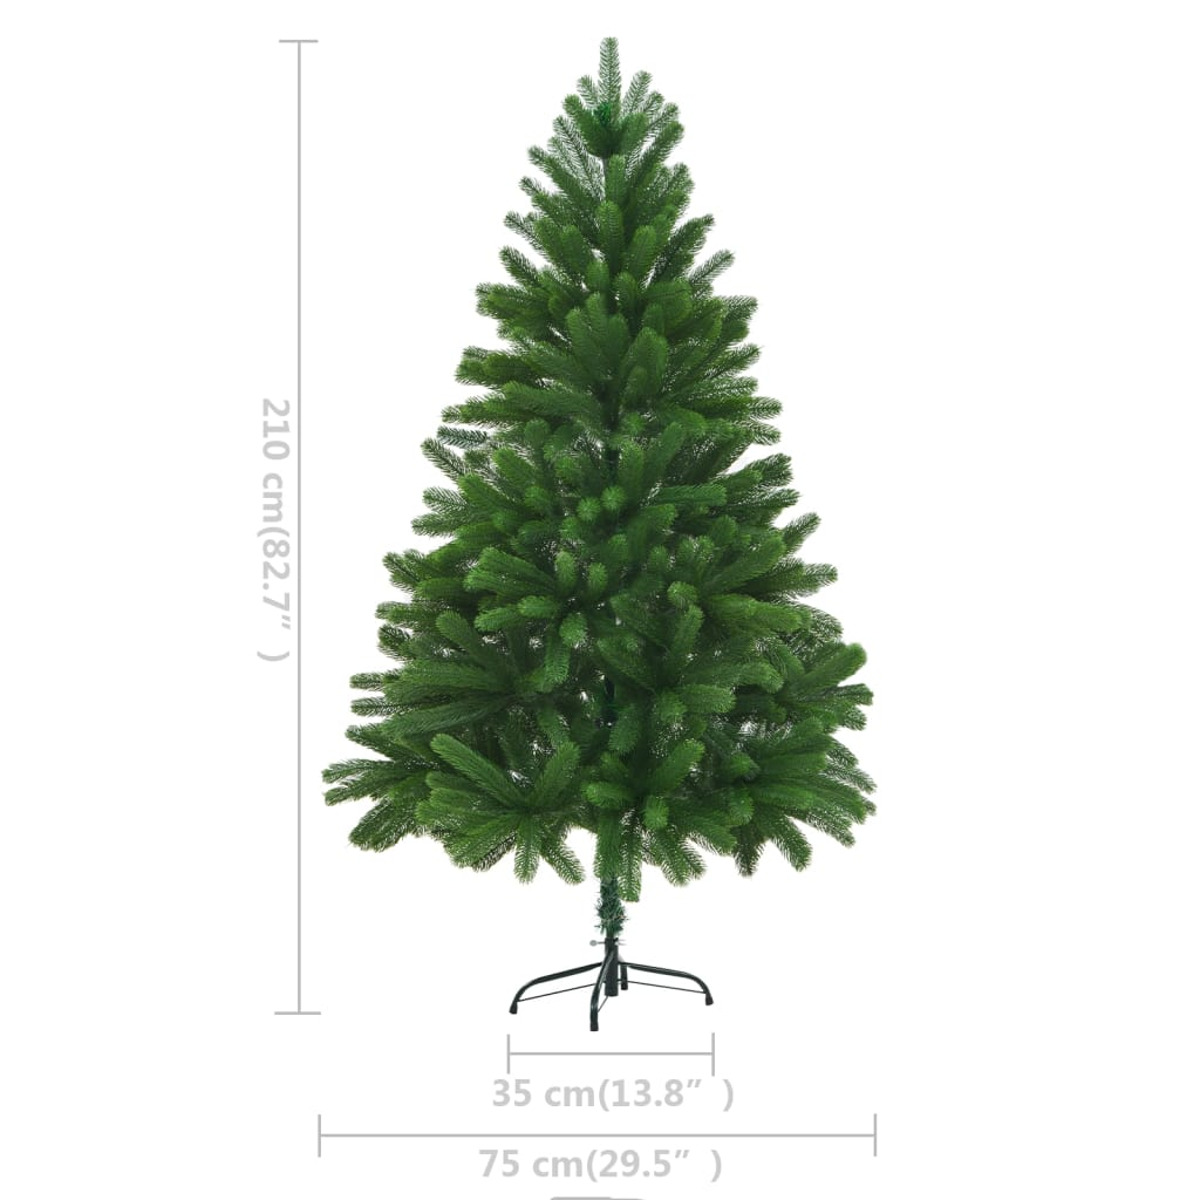 VIDAXL 3077642 Weihnachtsbaum